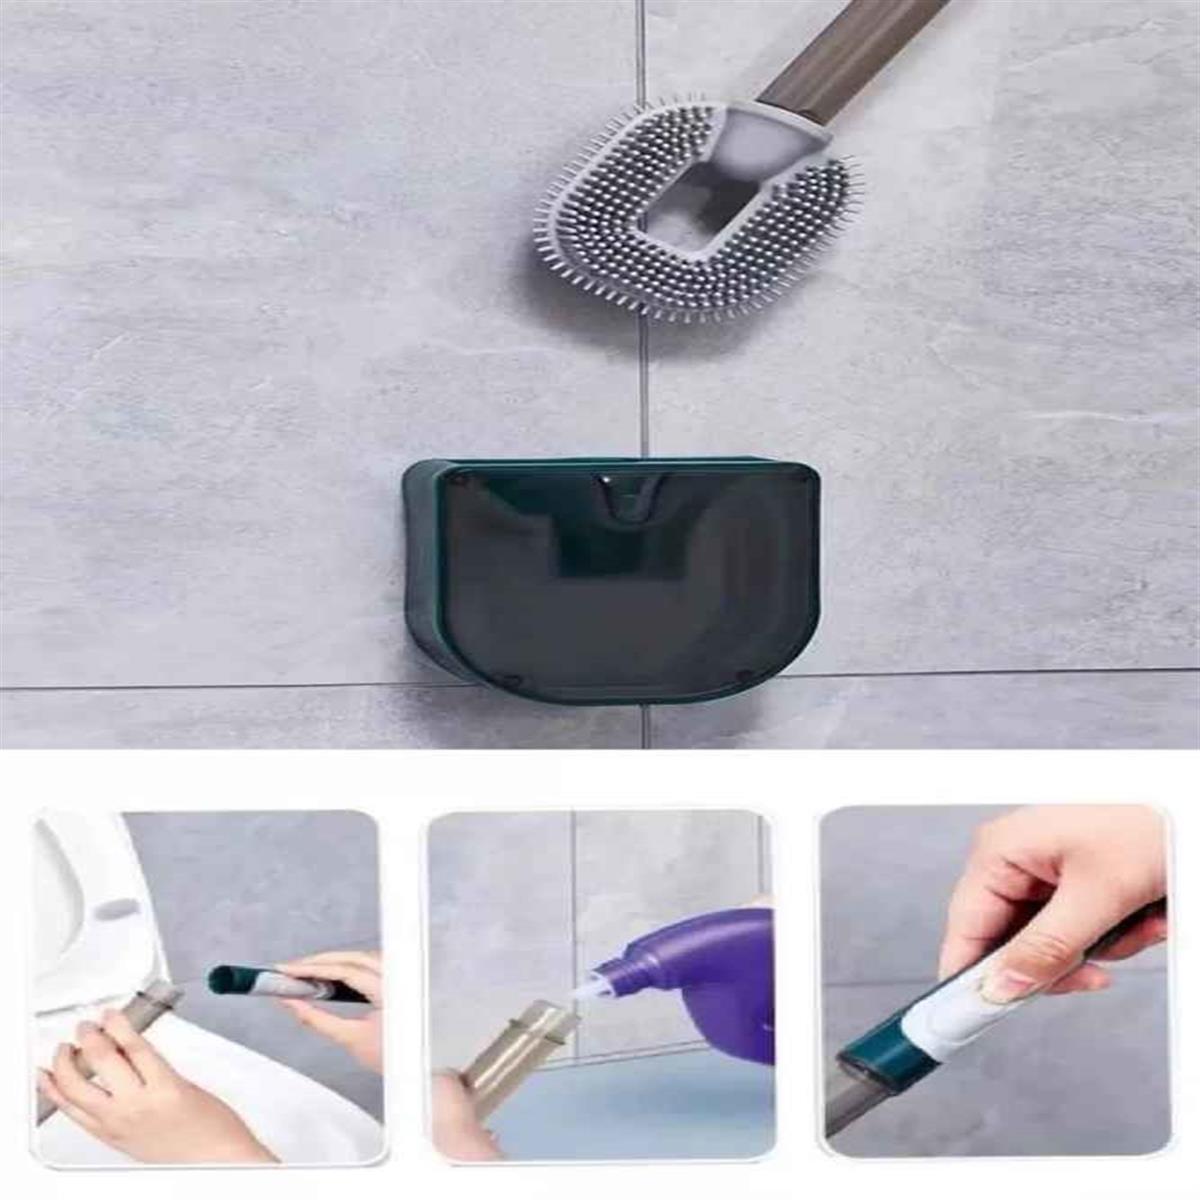 Pratik Doldurulabilir Deterjan Hazneli Bükülebilir Silikon Tuvalet Fırçası  Wc Klozet Fırçası- 1 Adet